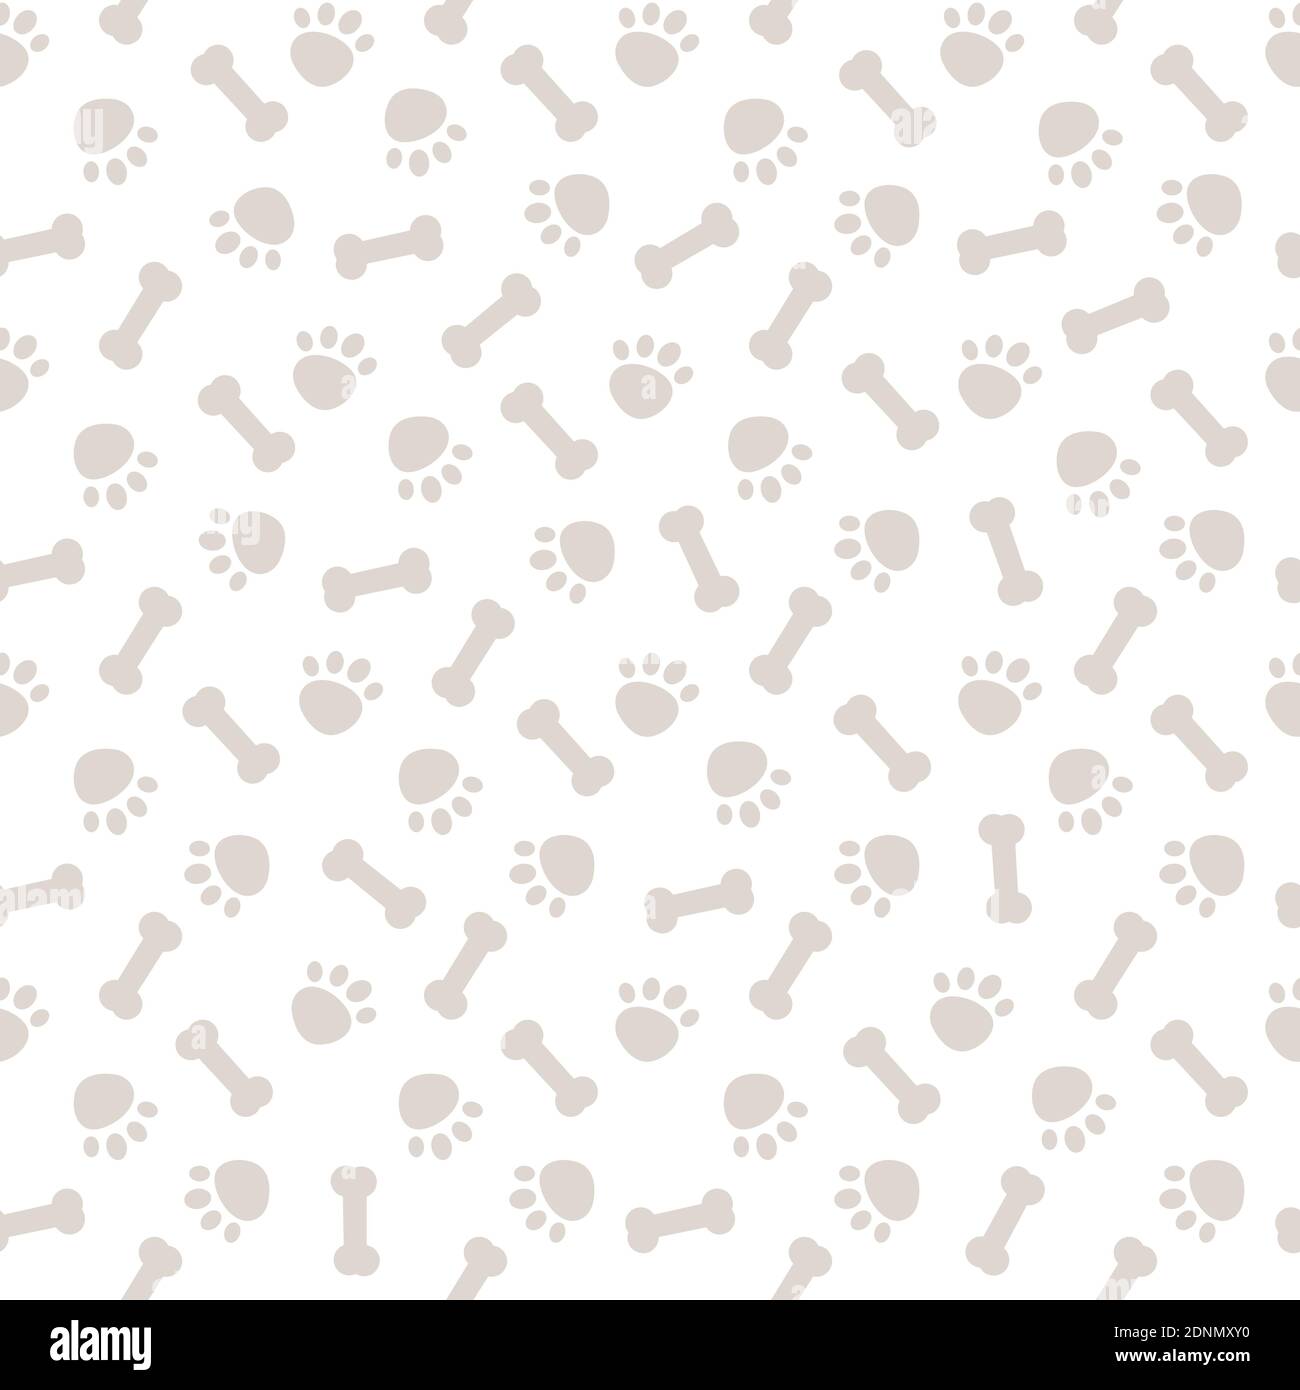 Nahtloses graues Muster mit Hundepfoten und Knochen Vektor Hintergrund Abbildung Stock Vektor